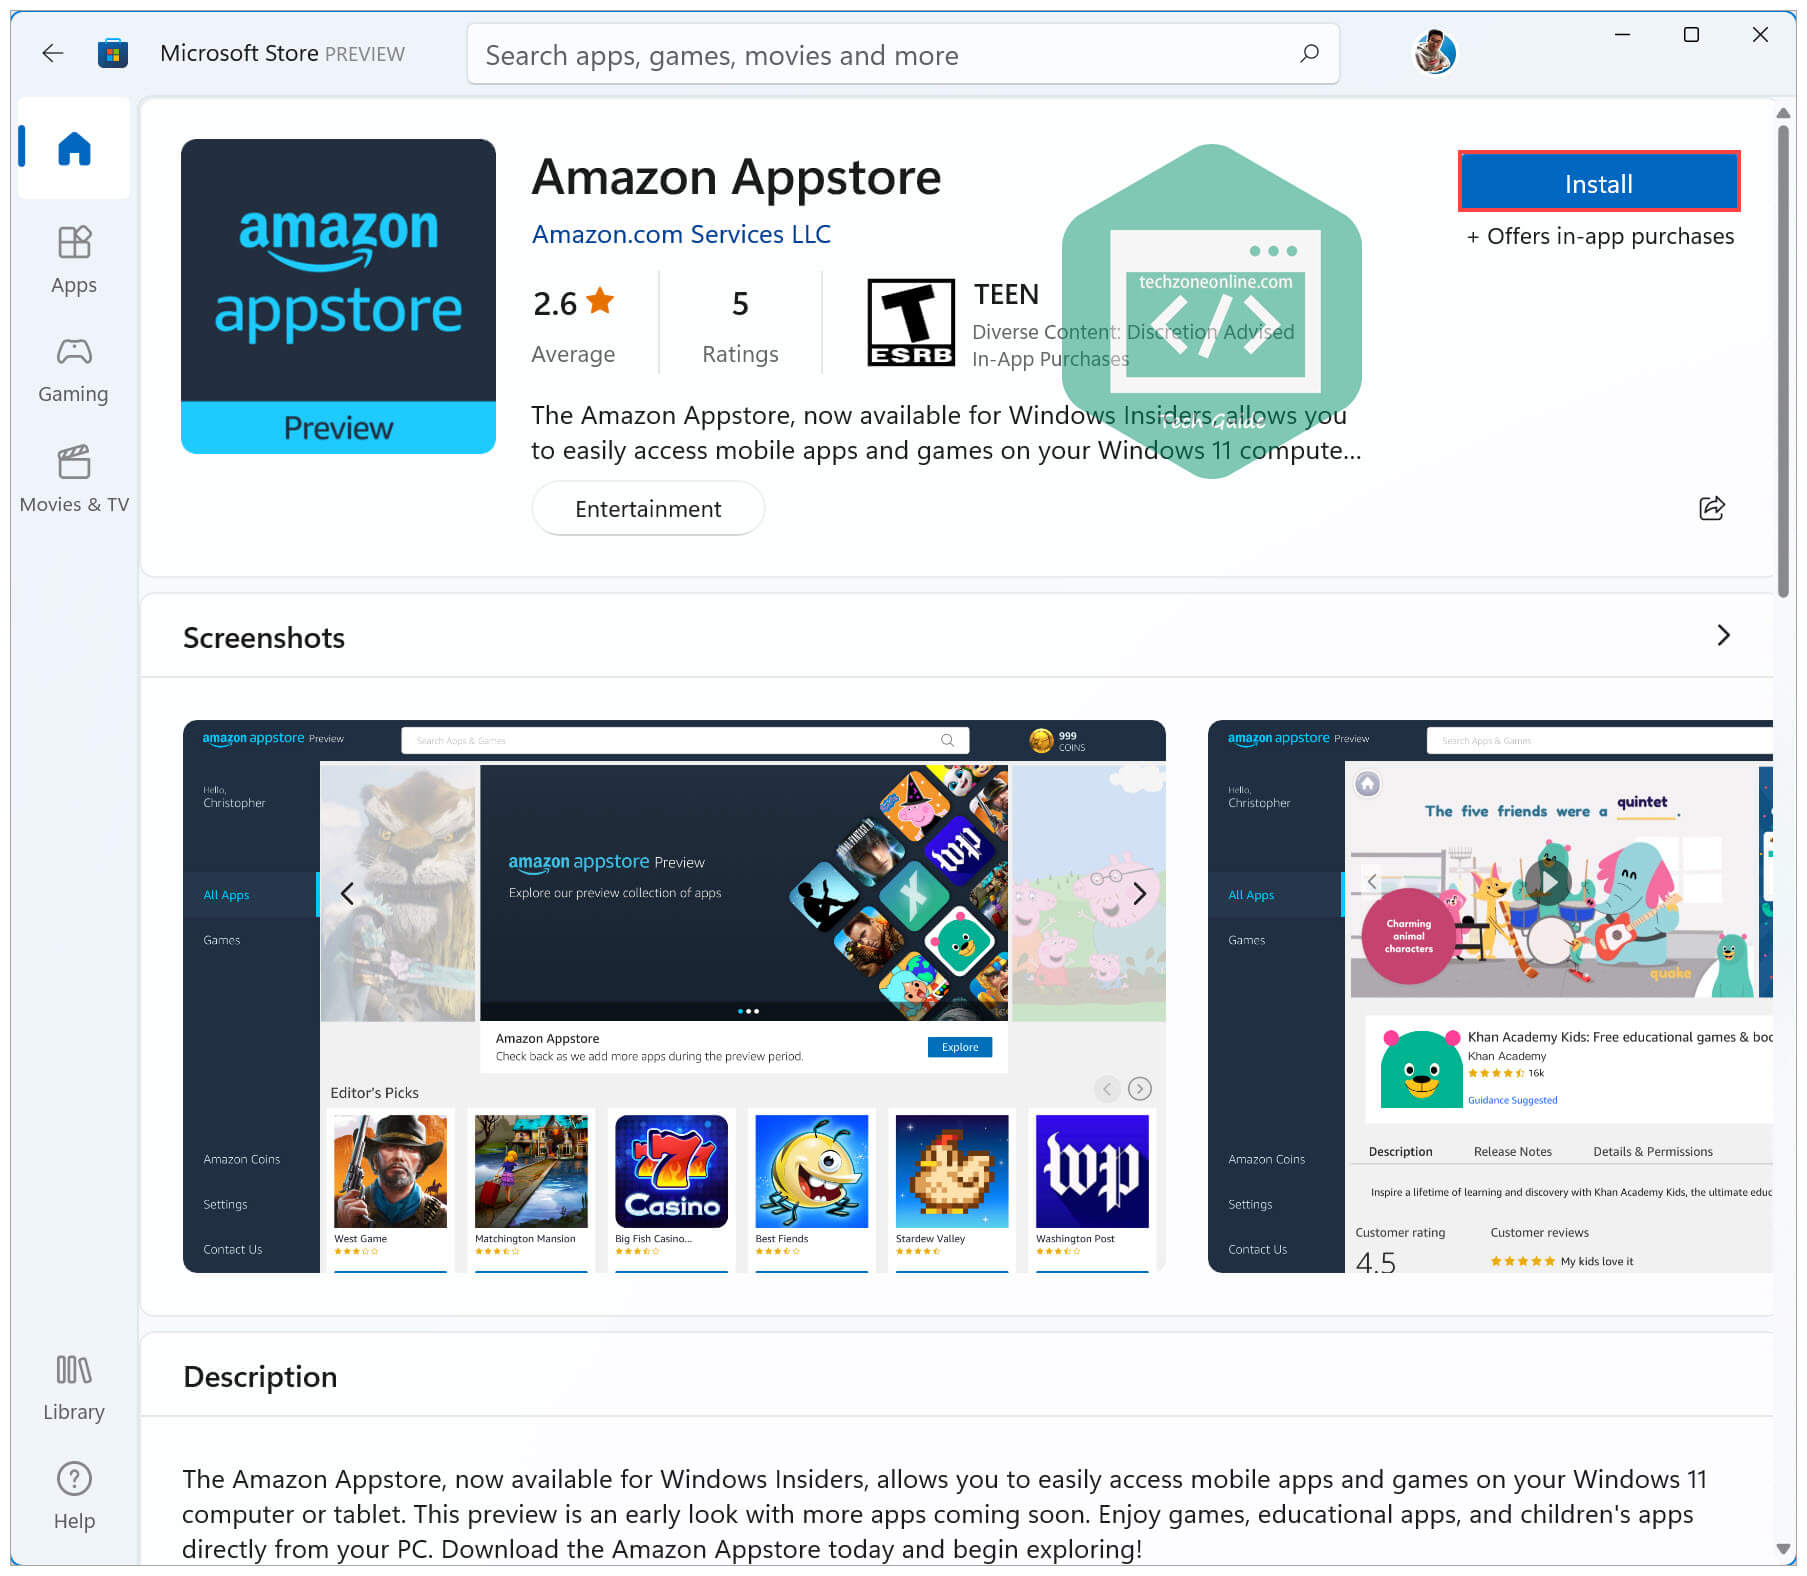 Amazon Appstore in Microsoft Store